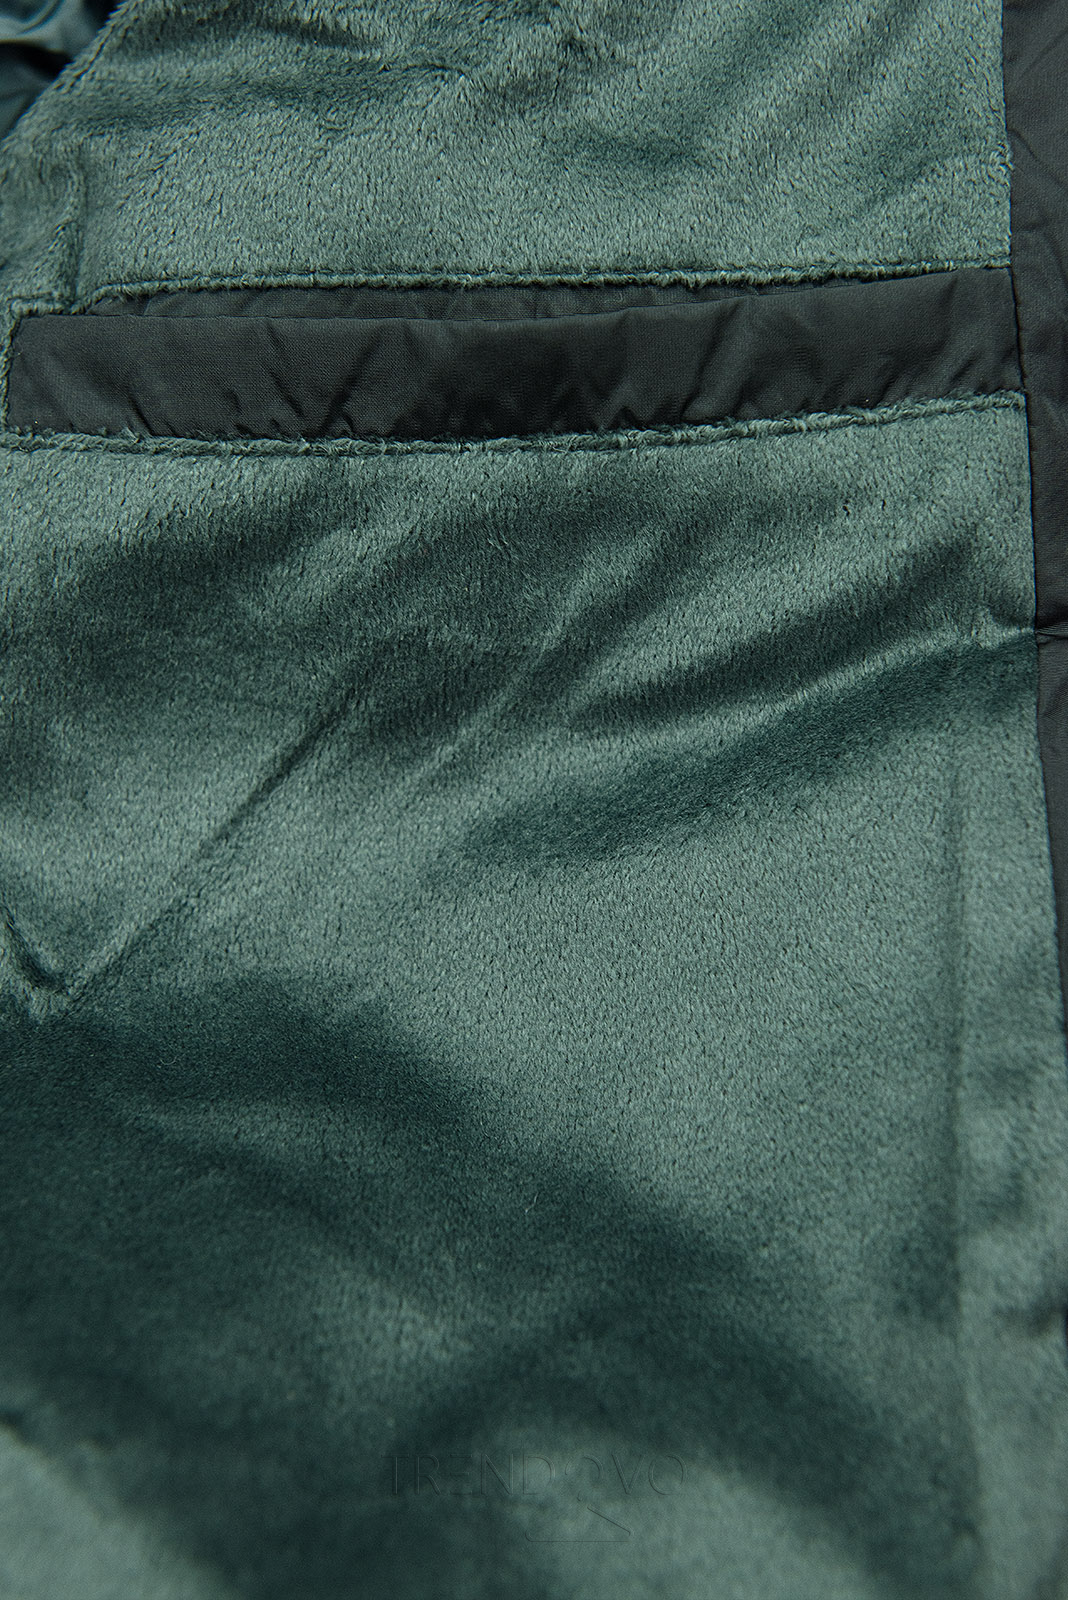 Tmavě zelená zimní bunda s vysokým límcem